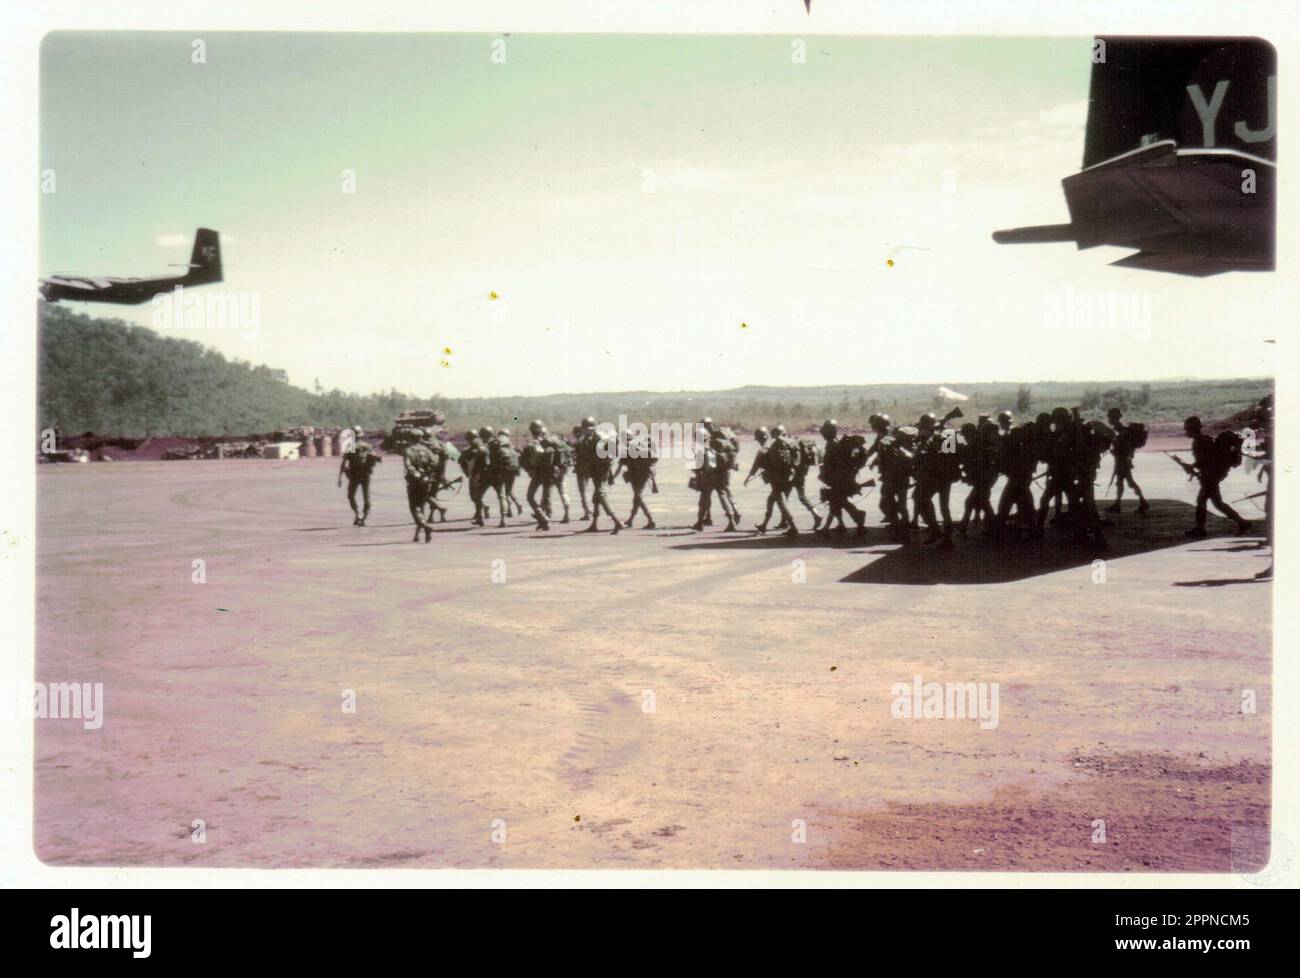 soldats sud viettamiens débarquant d'un transport de troupe durant la guerre du Vietnam Foto Stock